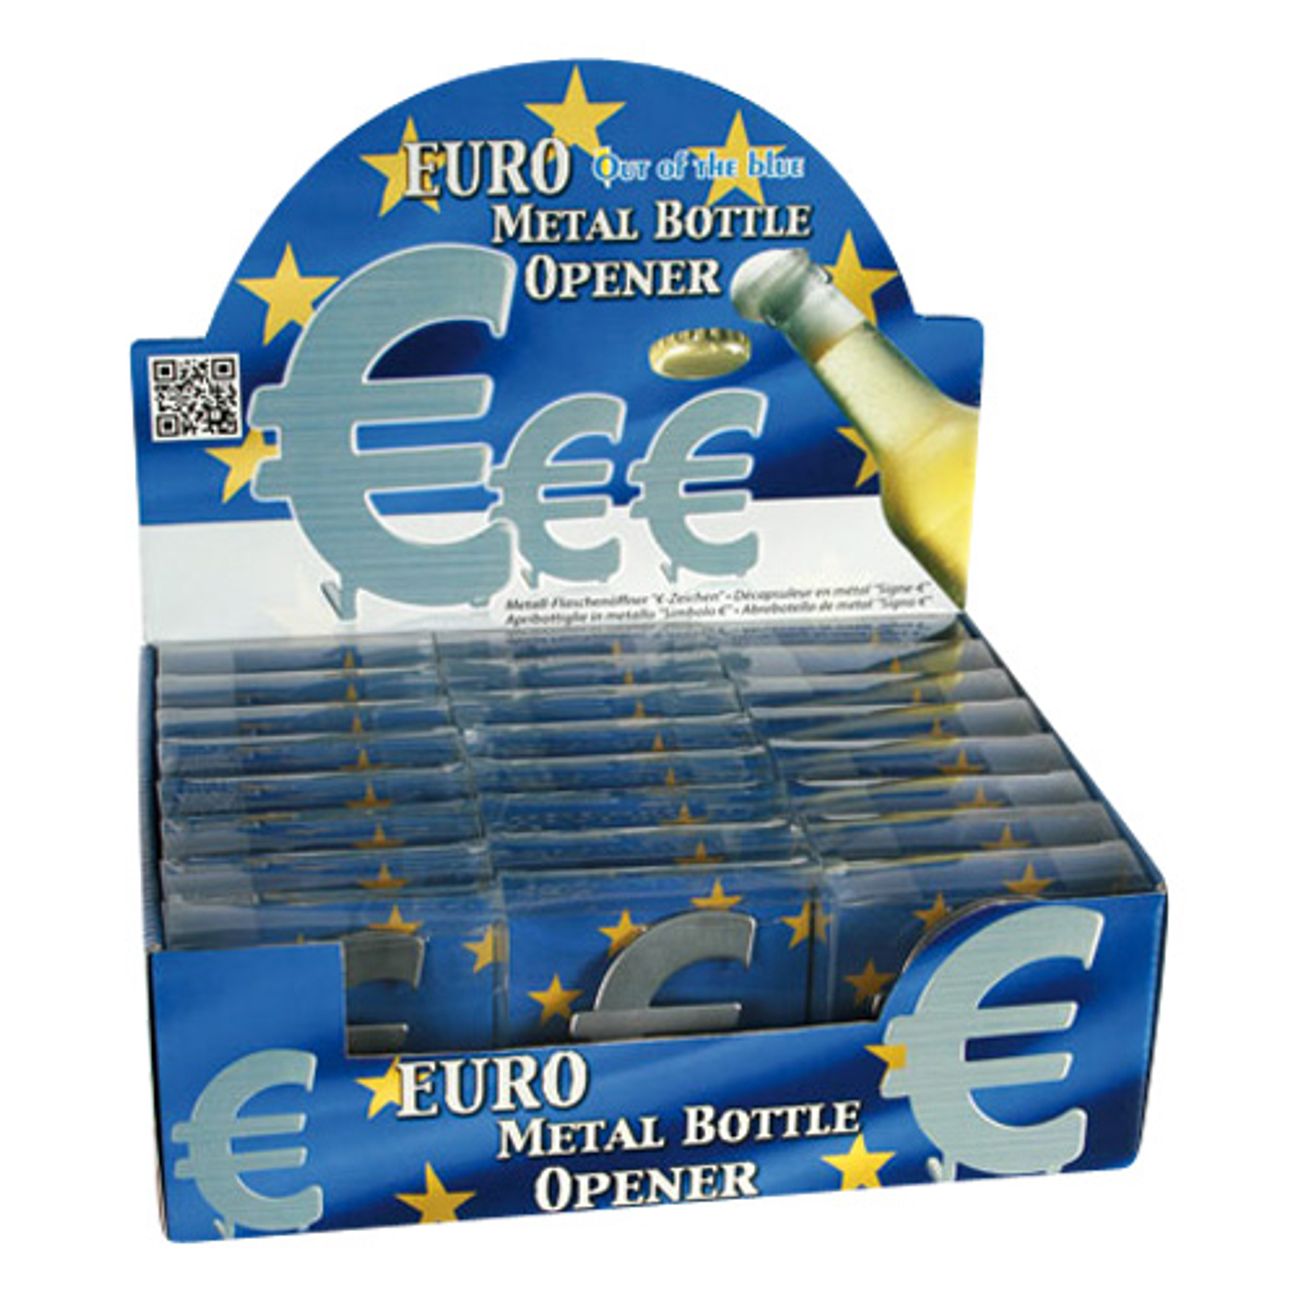 euro-kapsyloppnare-3